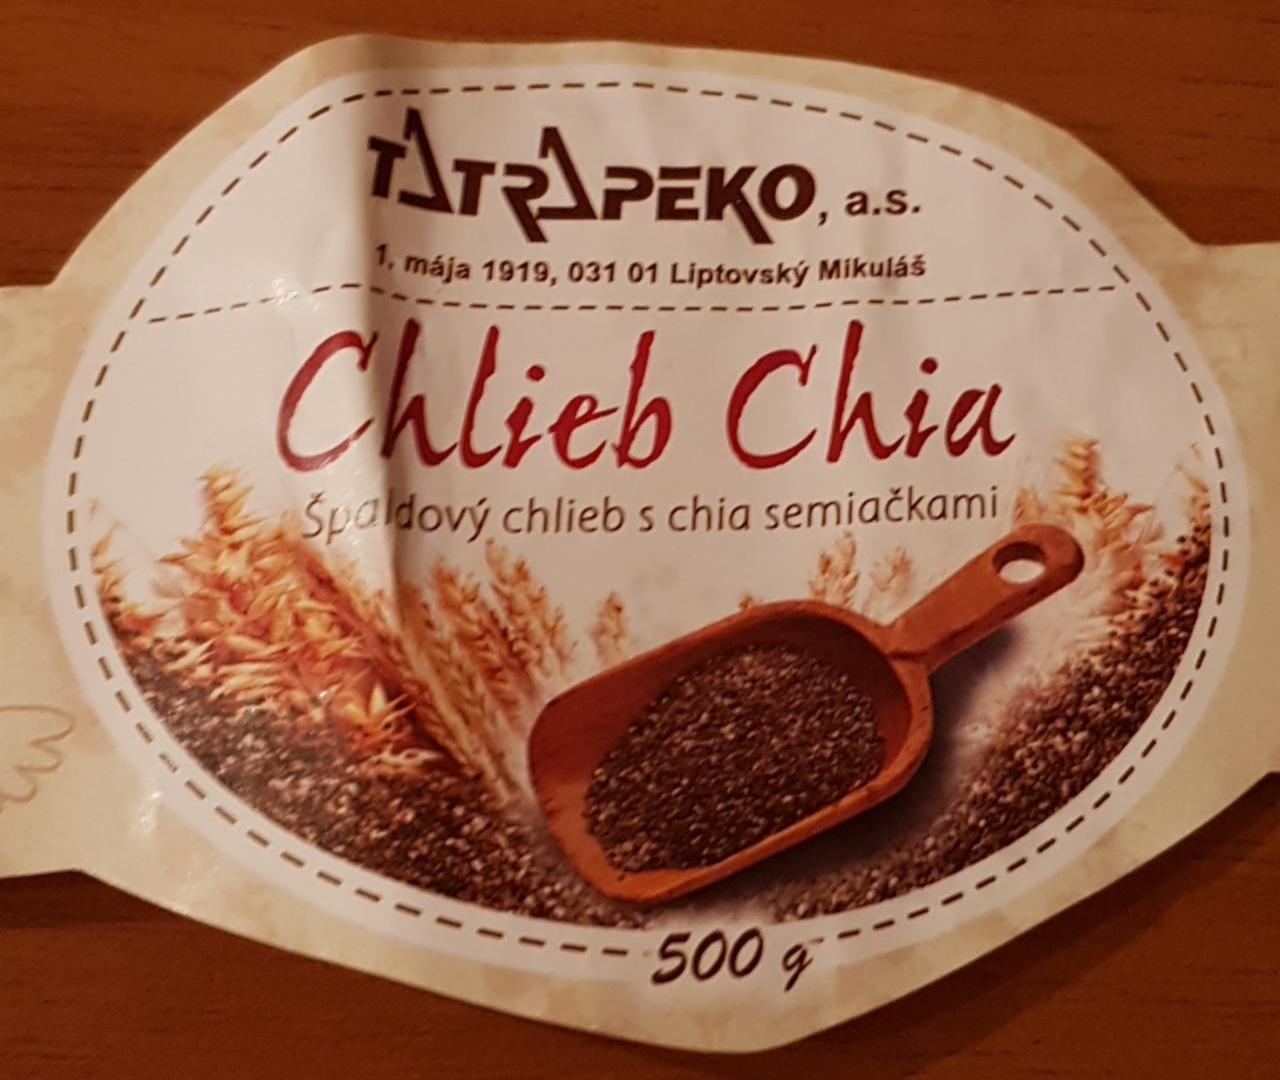 Fotografie - Chlieb chia, špaldový s chia - Tatrapeko